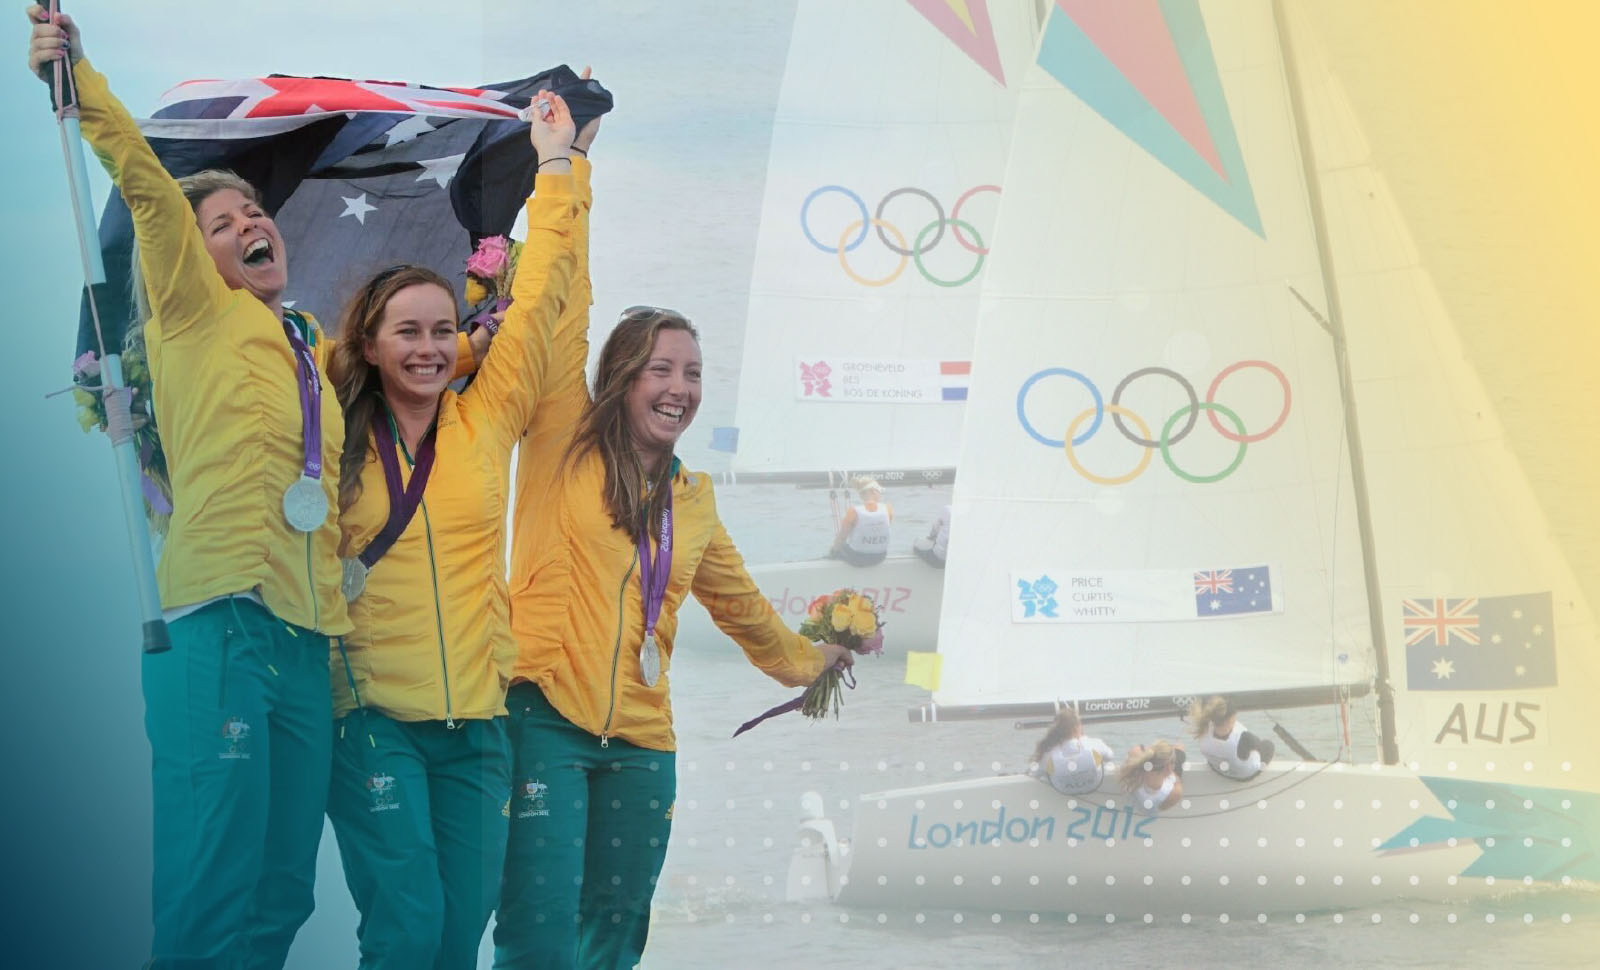 三位身穿黄线装饰装饰的女性 将澳大利亚国旗挂在帆船前 并挂起奥运环